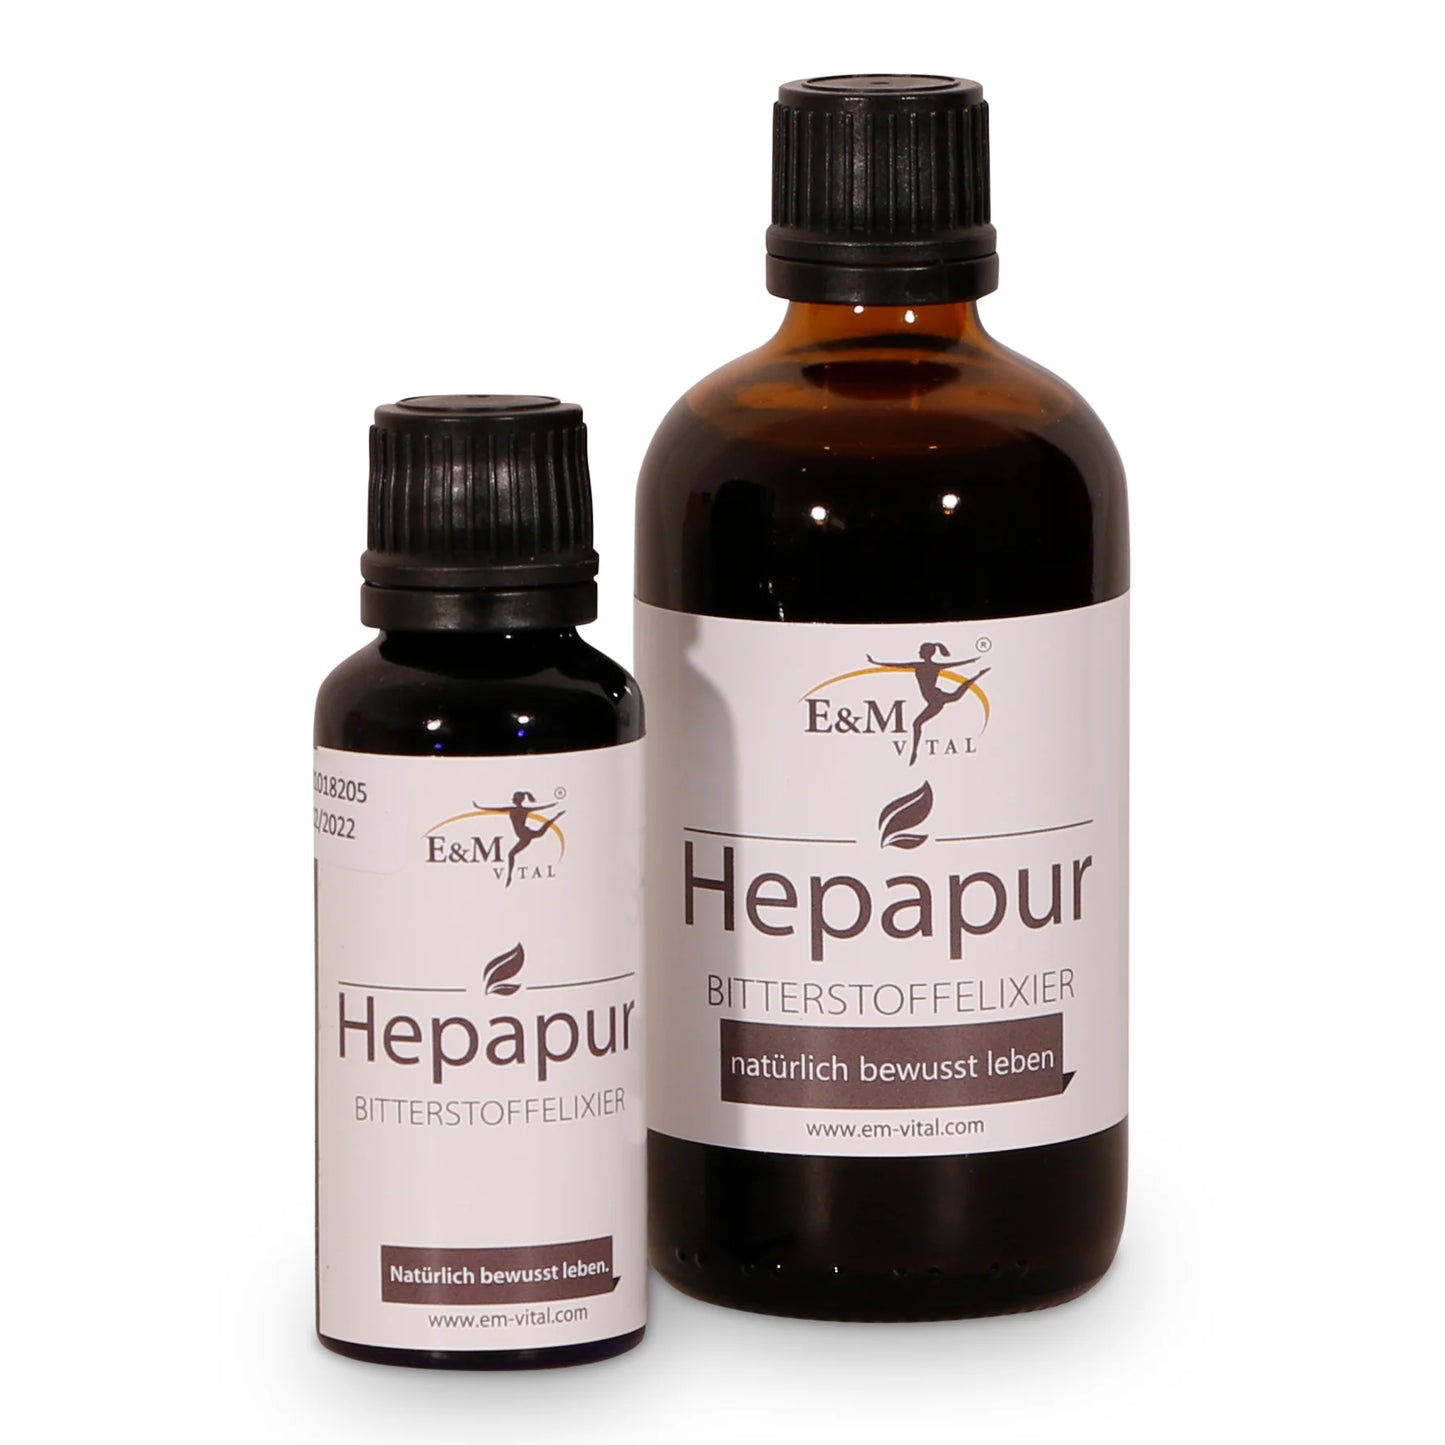 Hepapur - Bitterkräuterelixier